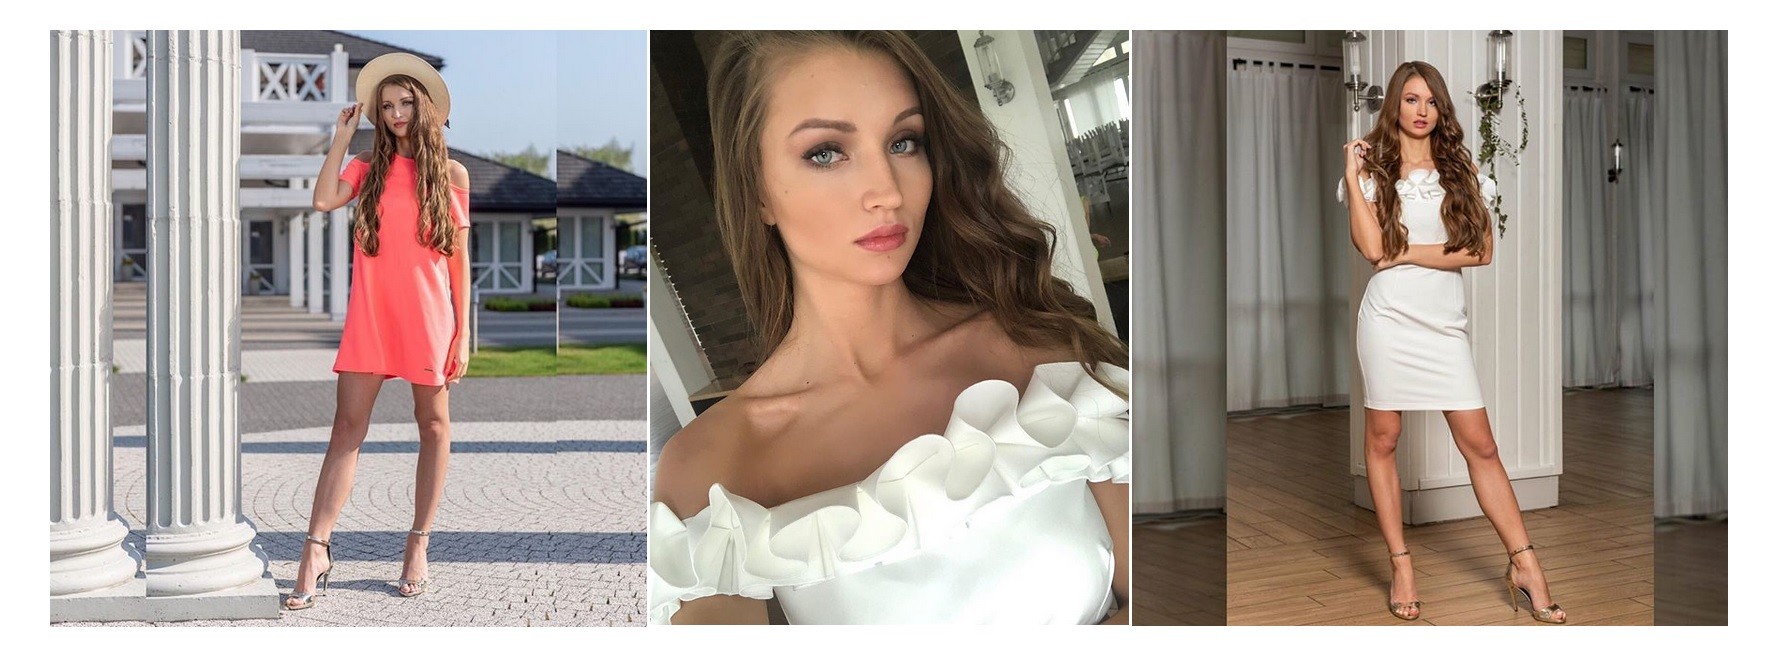 Anita Sobótka Miss Warszawy 2019